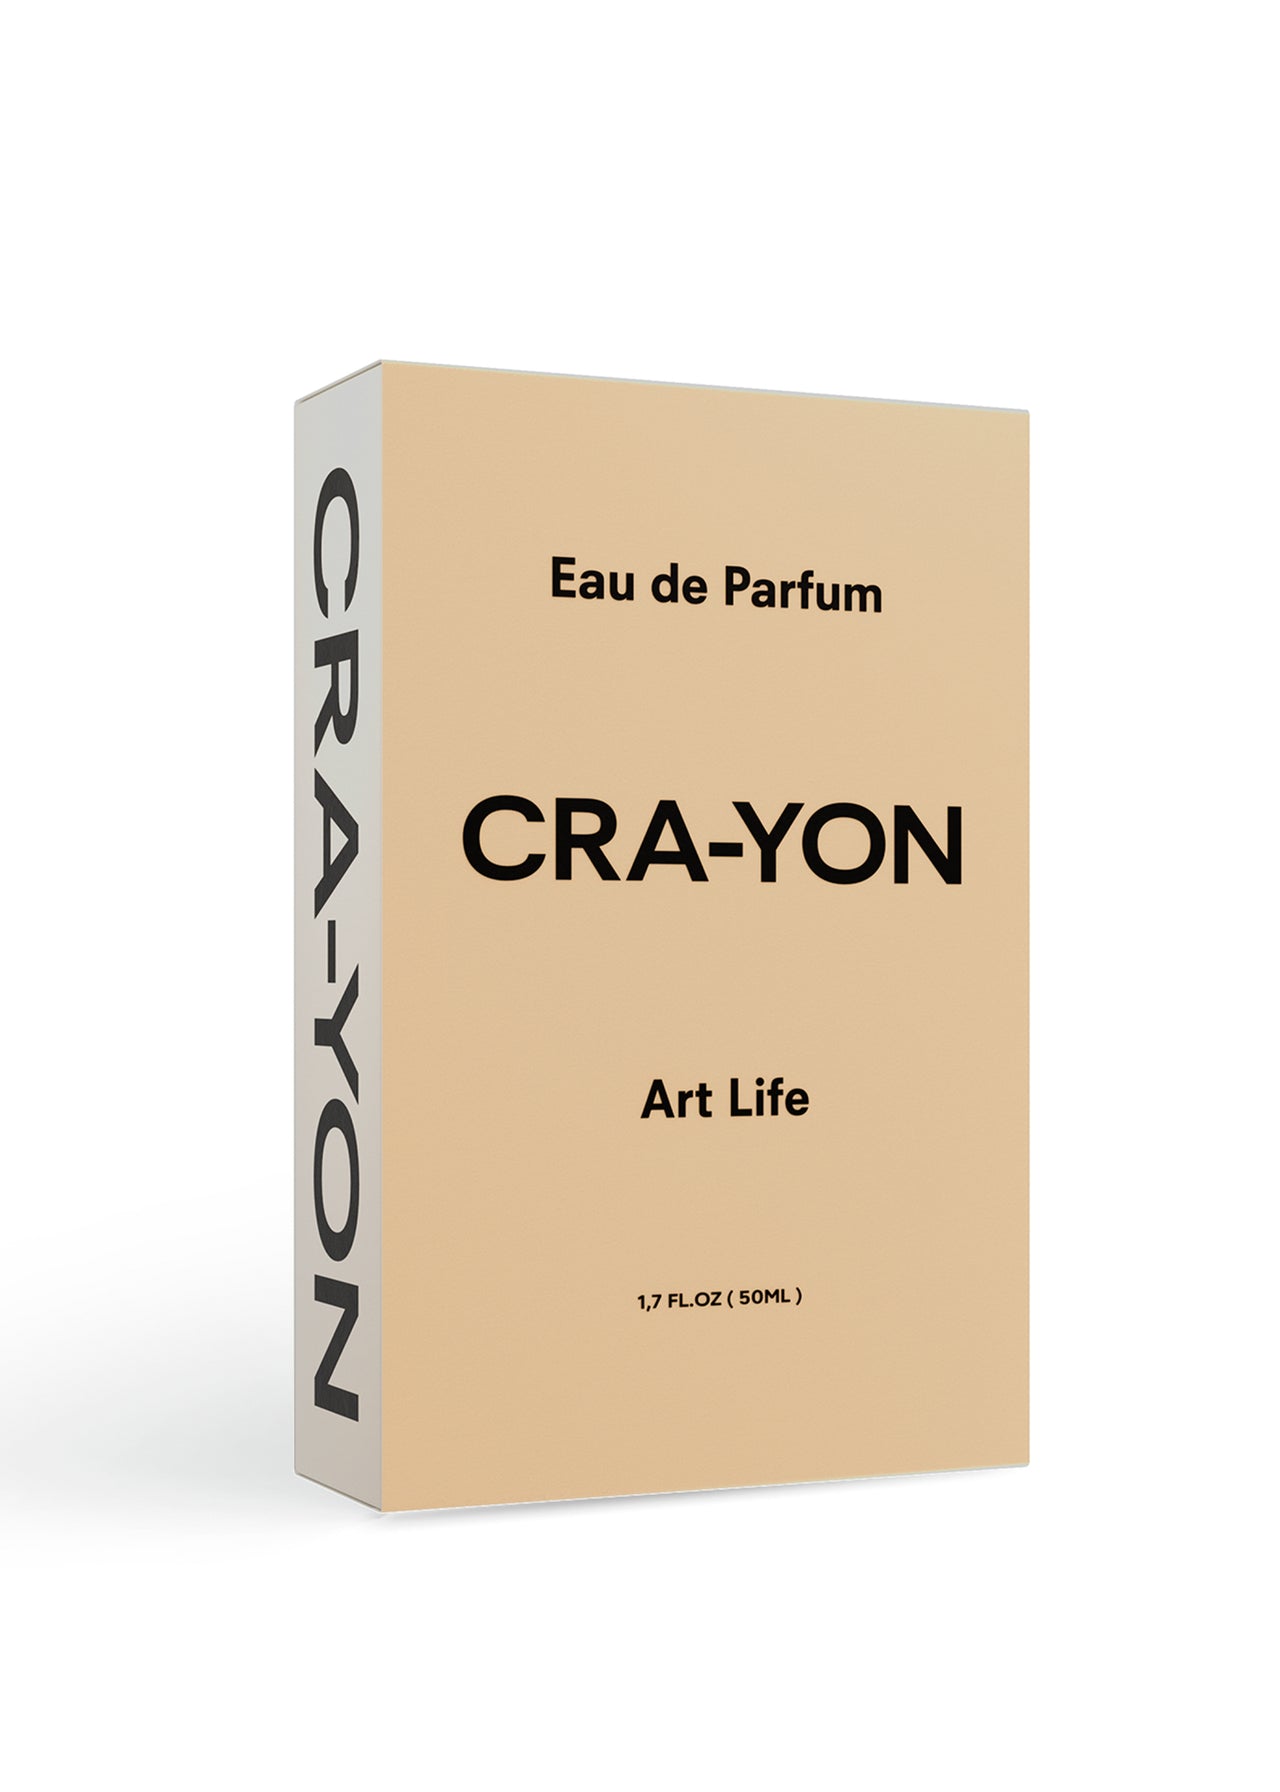 CRA-YON Art Life Eau de Parfum